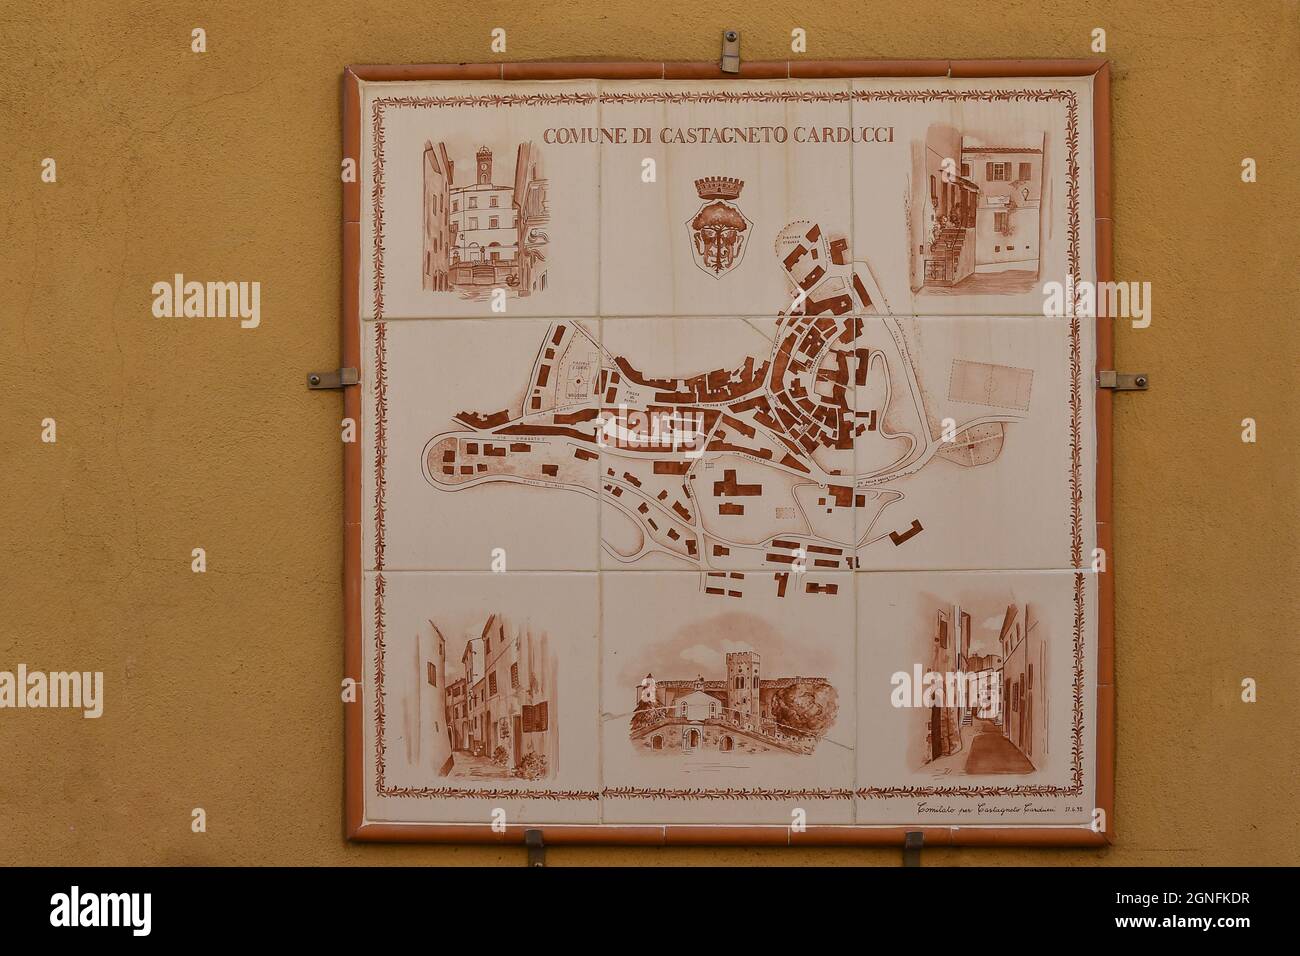 Primo piano di una mappa cittadina dipinta su piastrelle di ceramica appesa ad un edificio nel centro storico di Castagneto Carducci, Livorno, Toscana, Italia Foto Stock